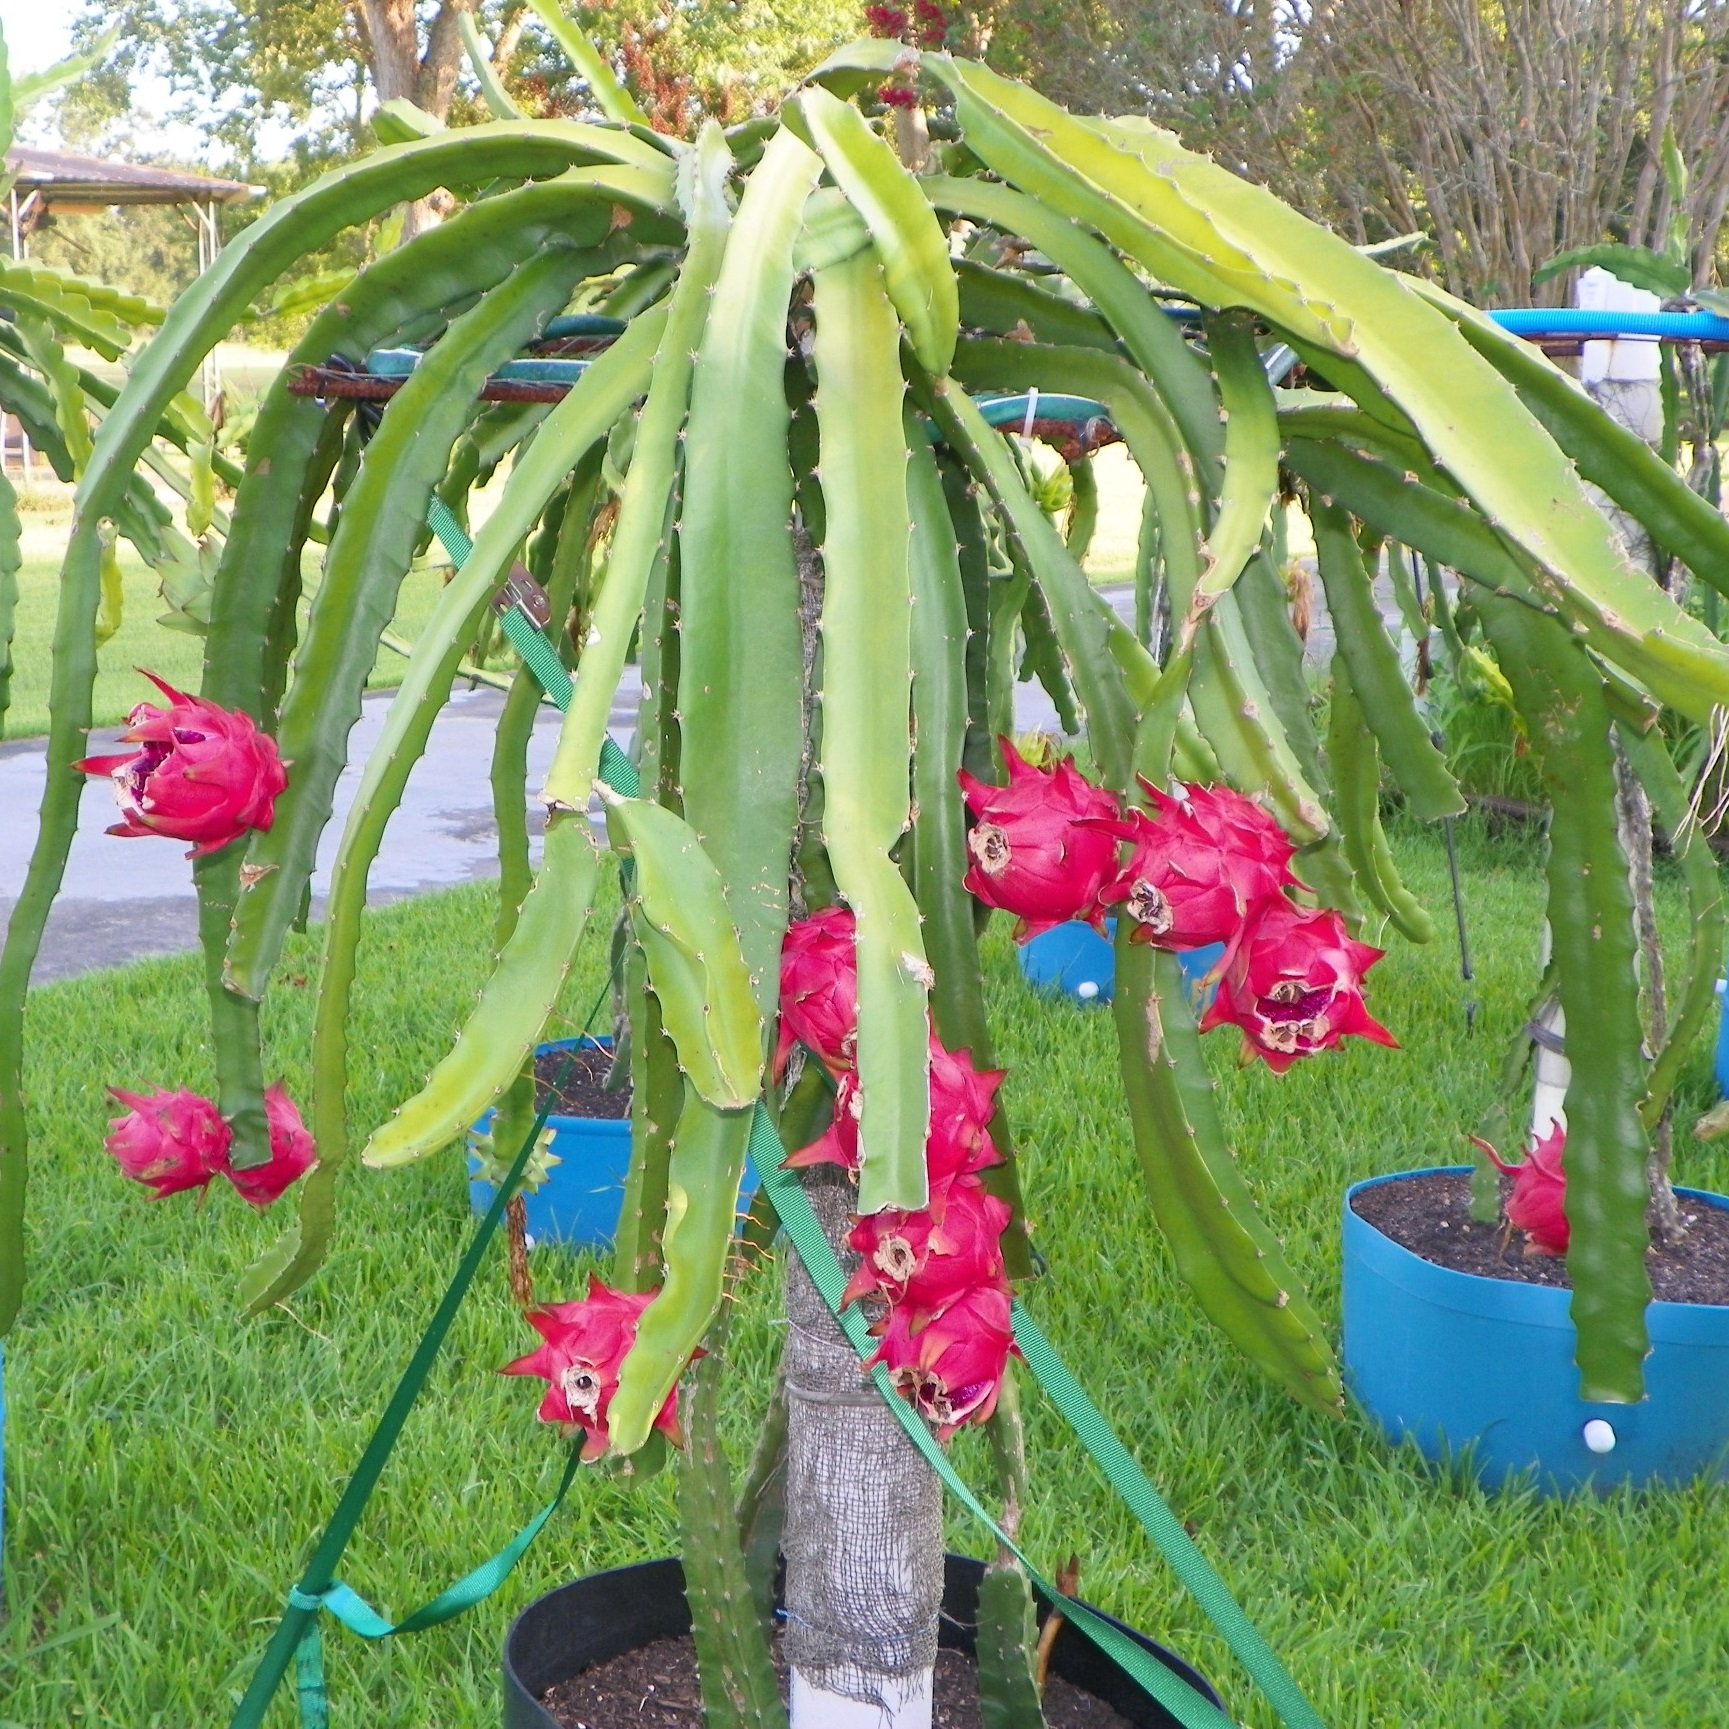 dragonia plant